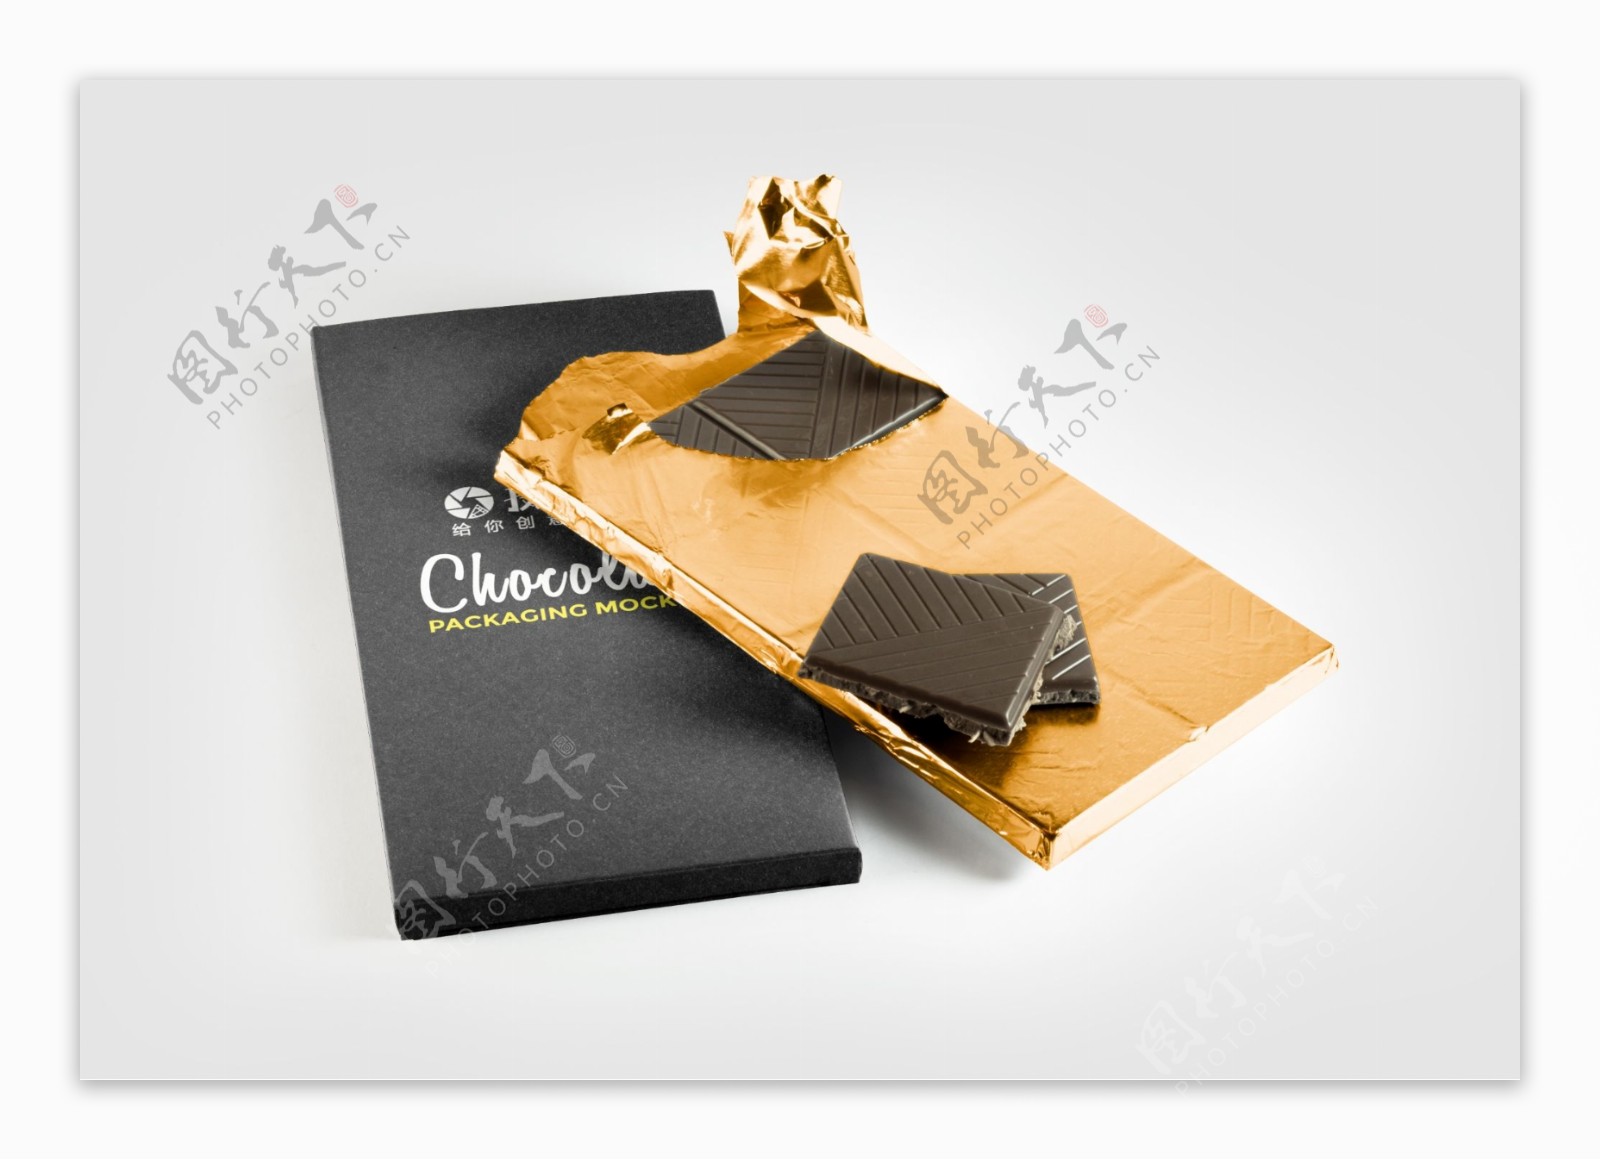 巧克力包装设计展示